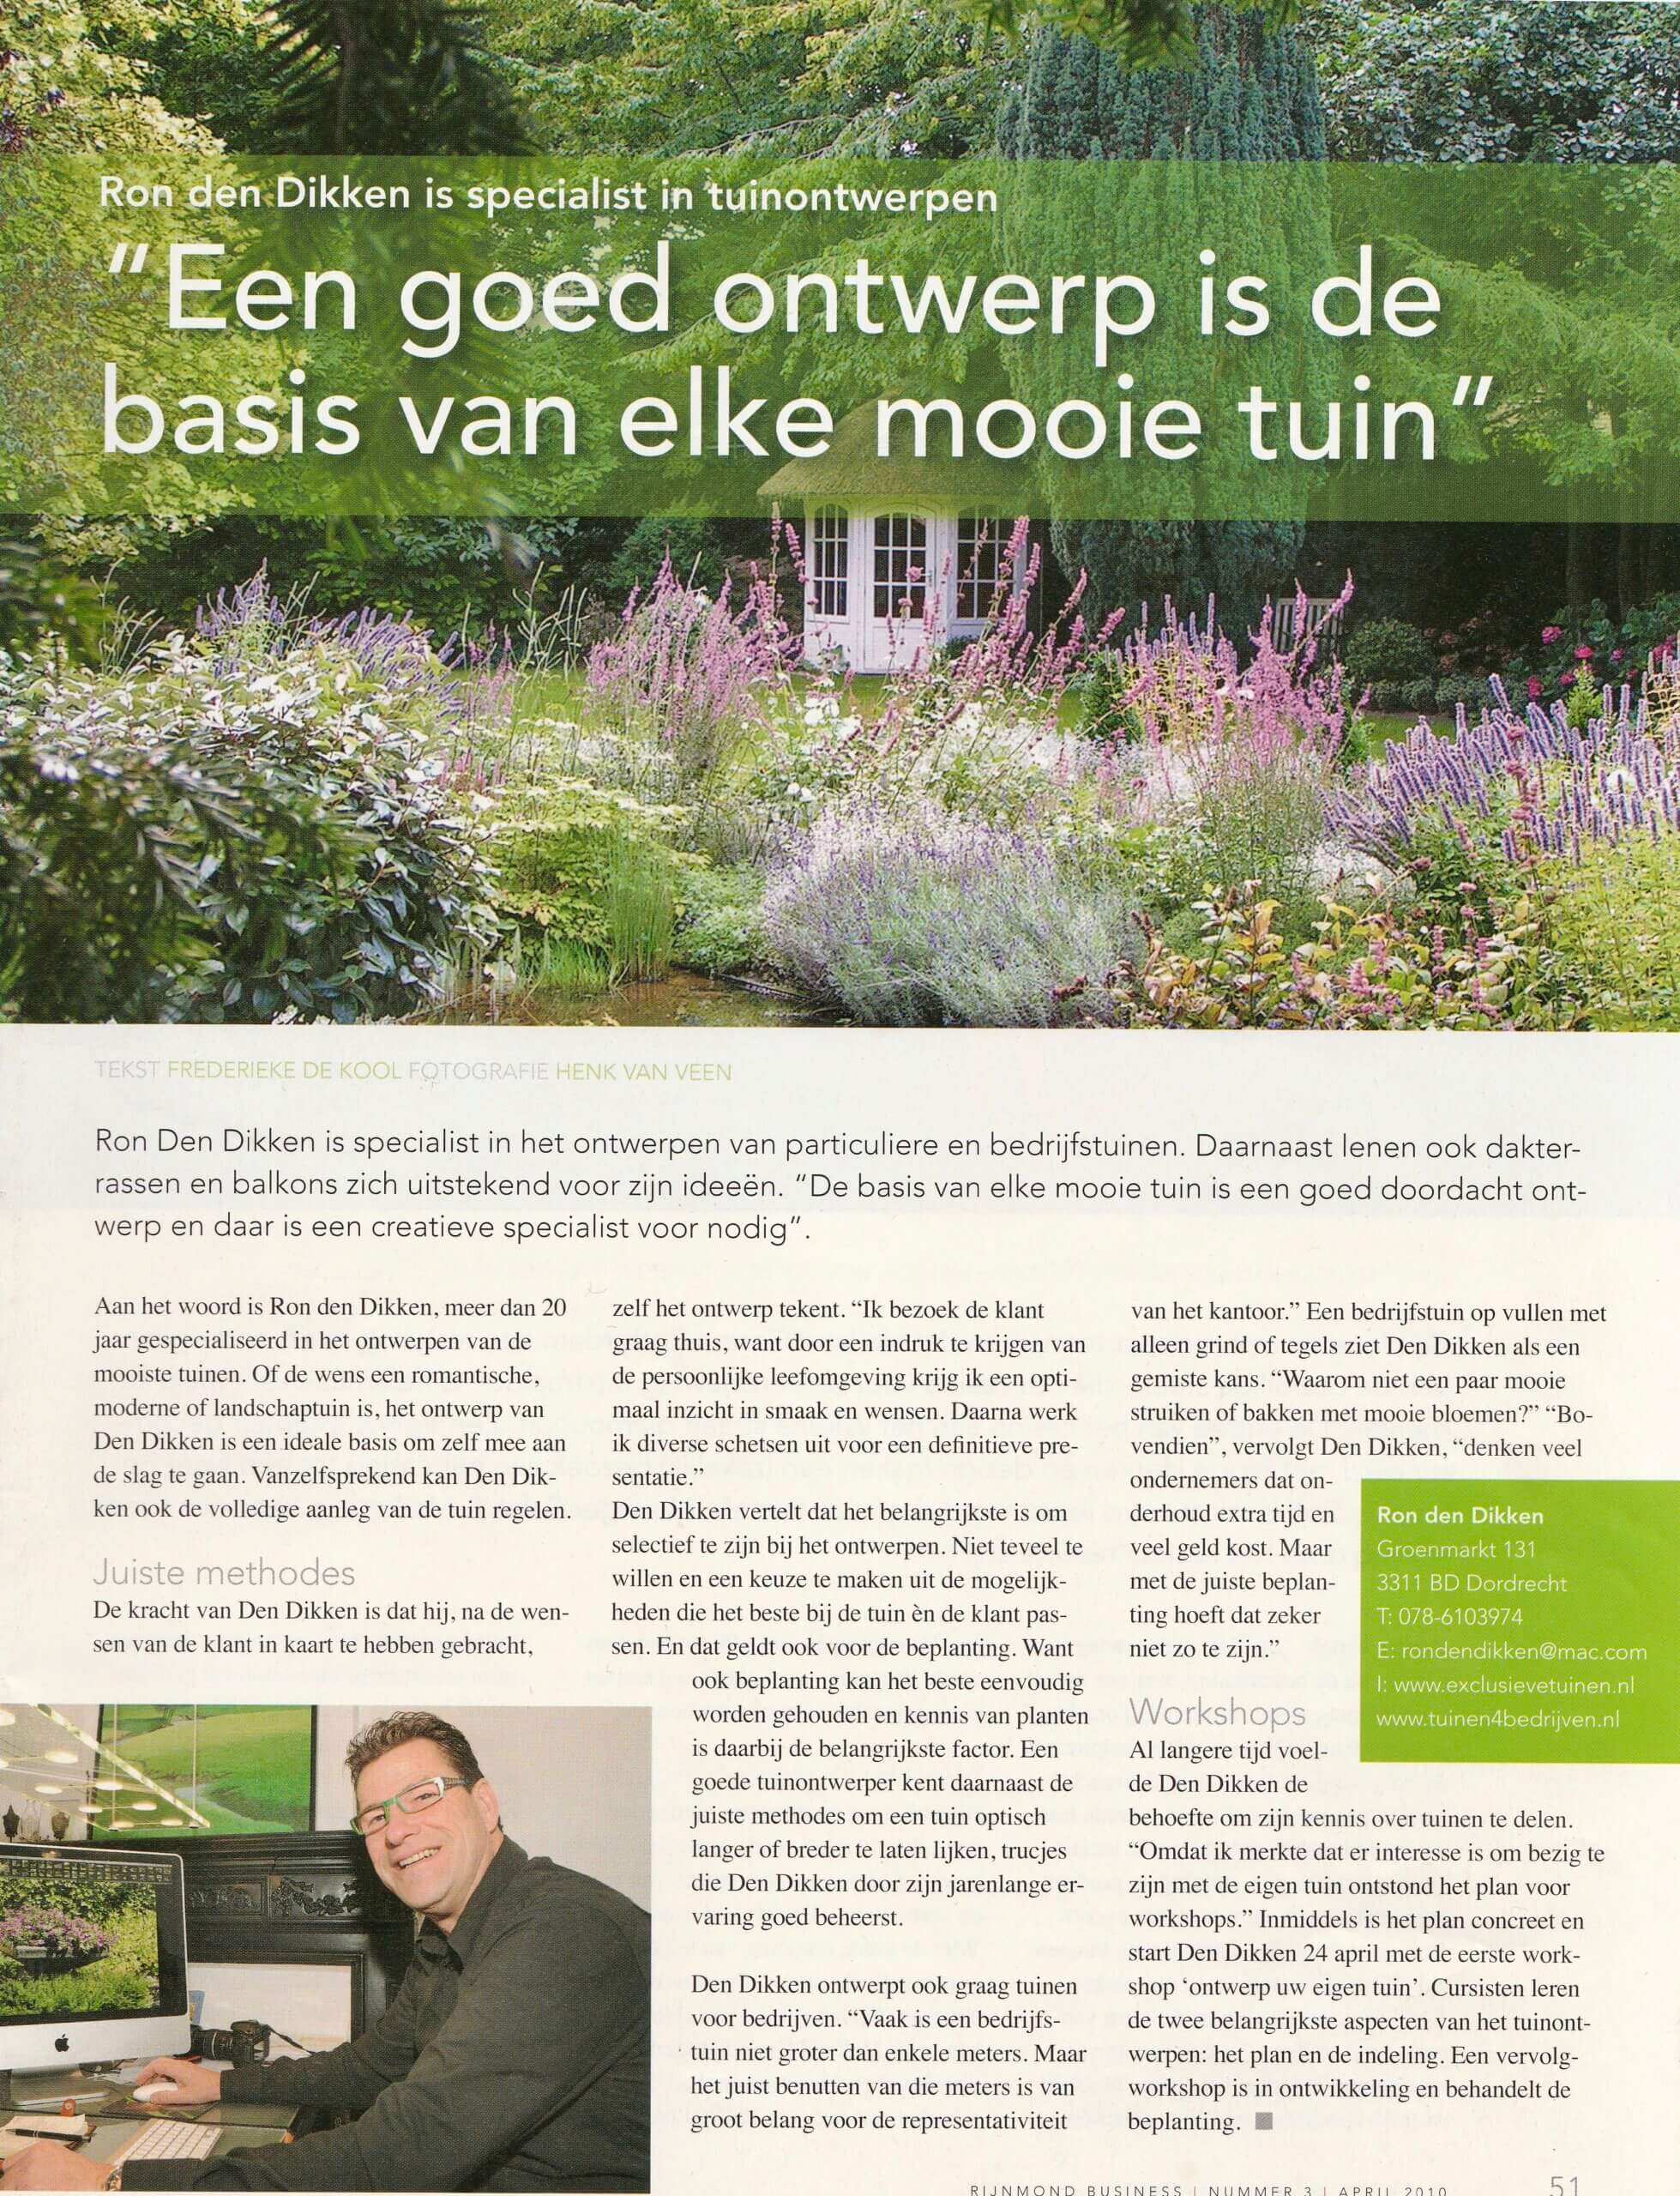 Een artikel uit 2010 over het ontwerpen van tuinen.